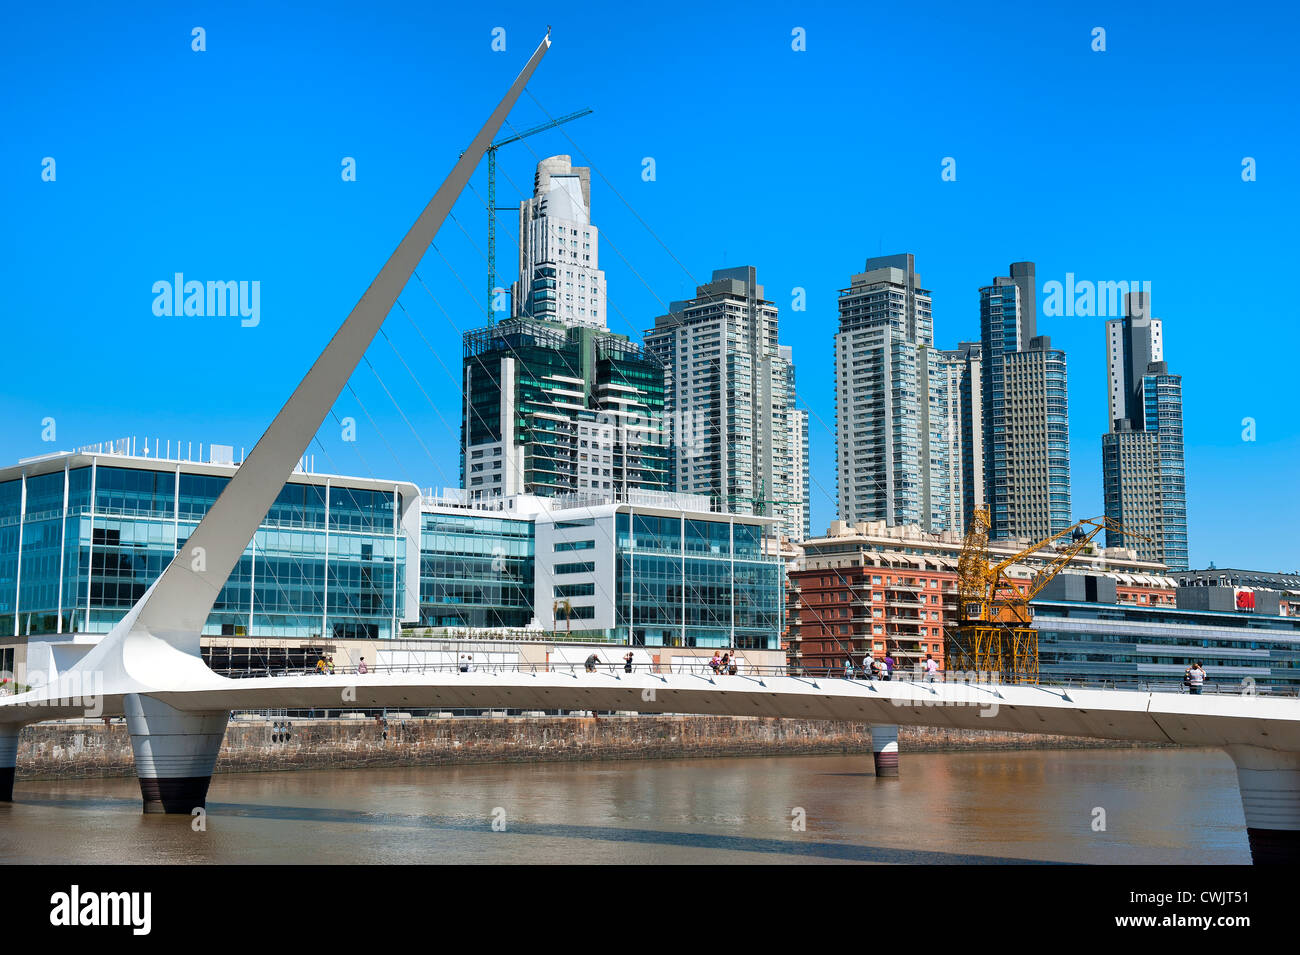 Puerto Madero and Puente de la Mujer, Buenos Aires, Argentina Stock Photo